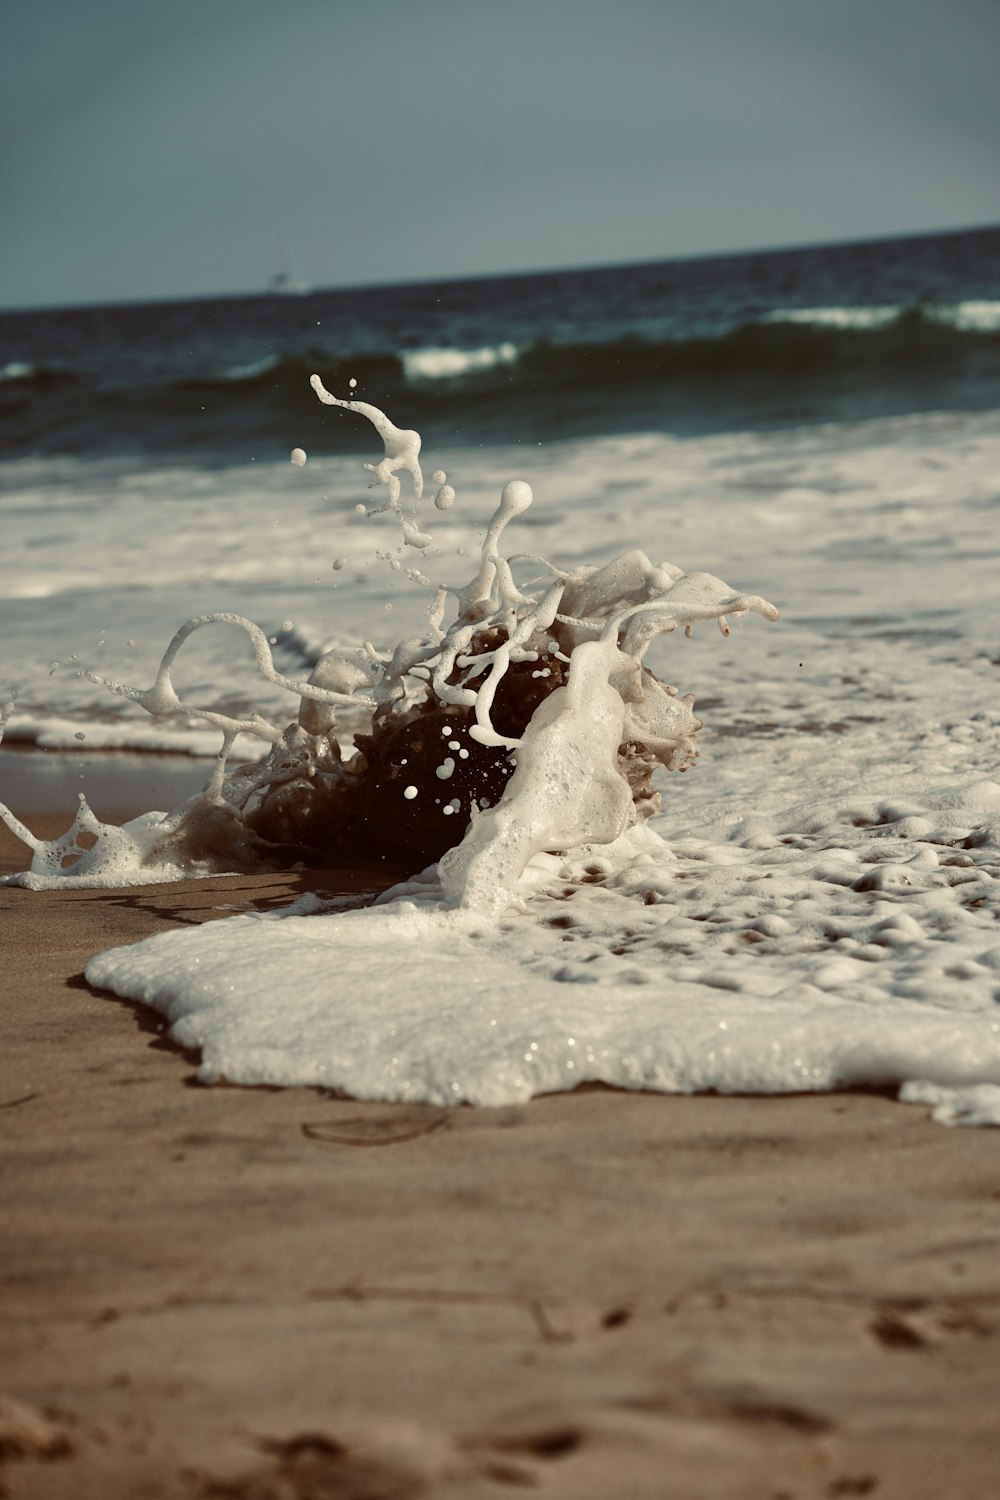 a wave crashing onto a sandy beach next to the ocean